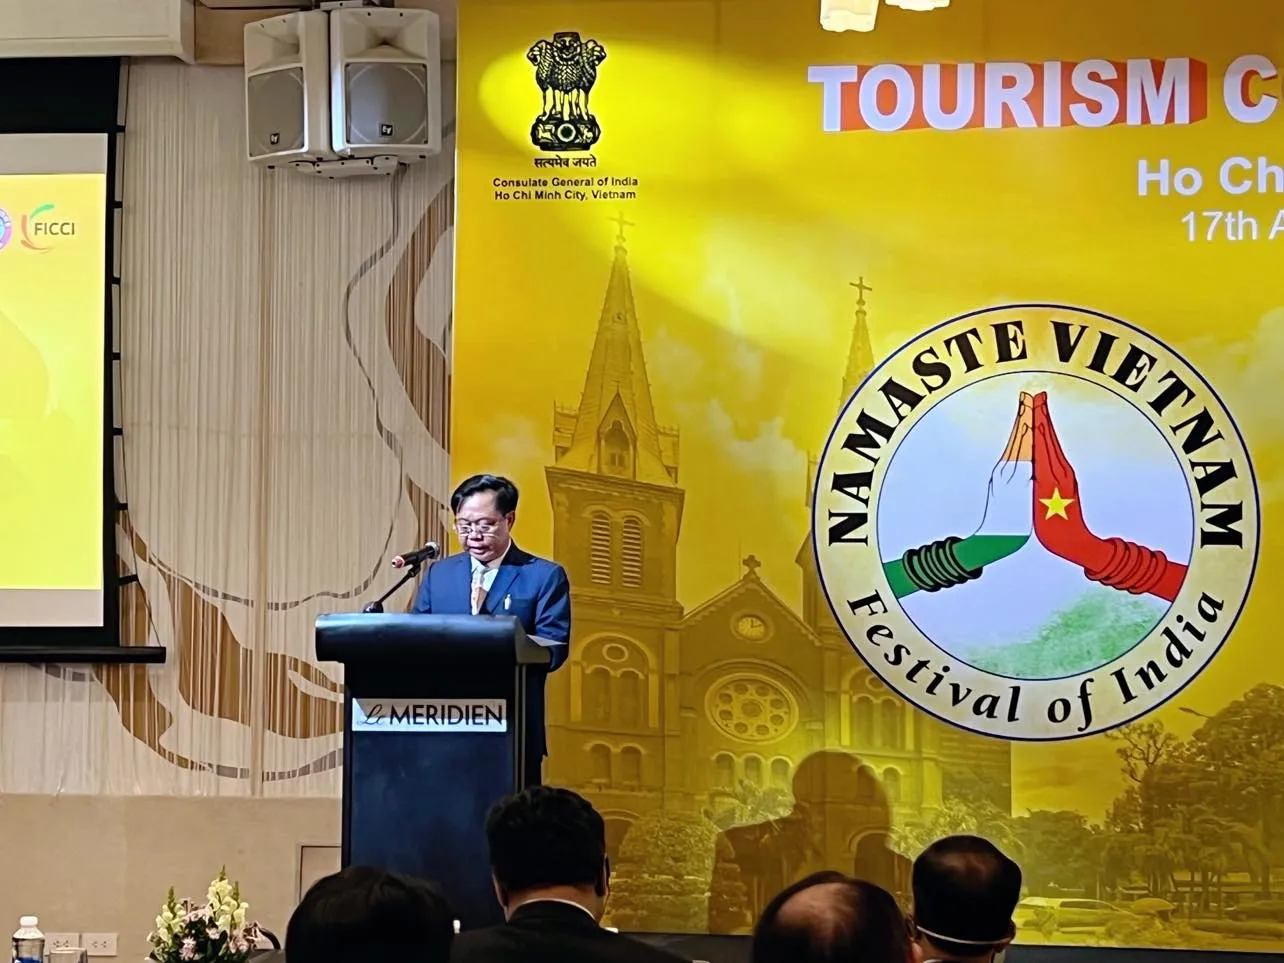 Cơ hội tăng trưởng vượt bậc cho du lịch Việt Nam - Ấn Độ